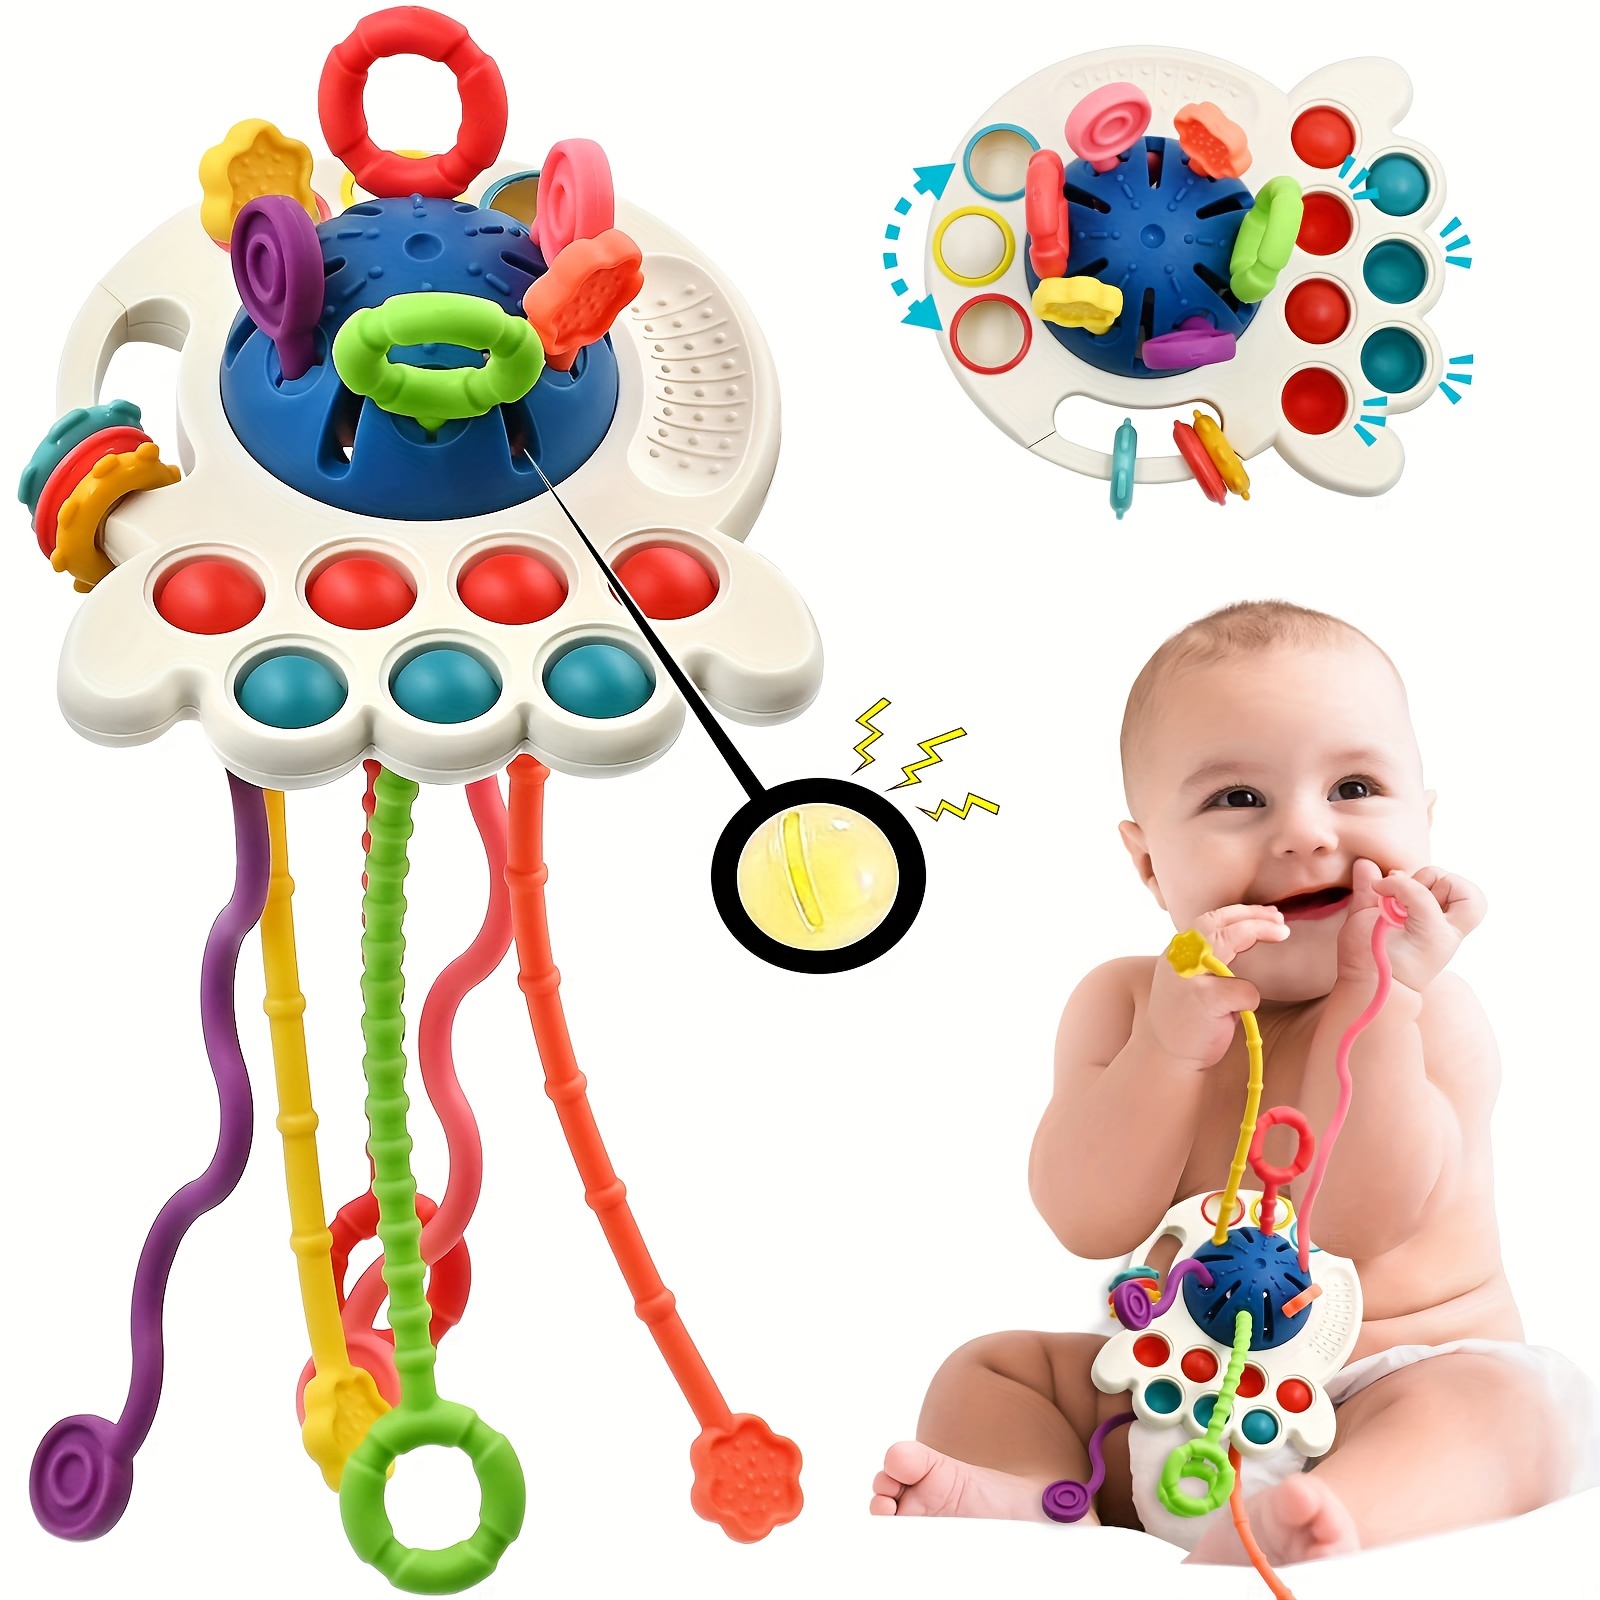 Juguetes Montessori para niños de 1 año, cubo y 6 bloques de formas  sensoriales, juguetes para bebés de 12 a 18 meses, regalos de cumpleaños  para